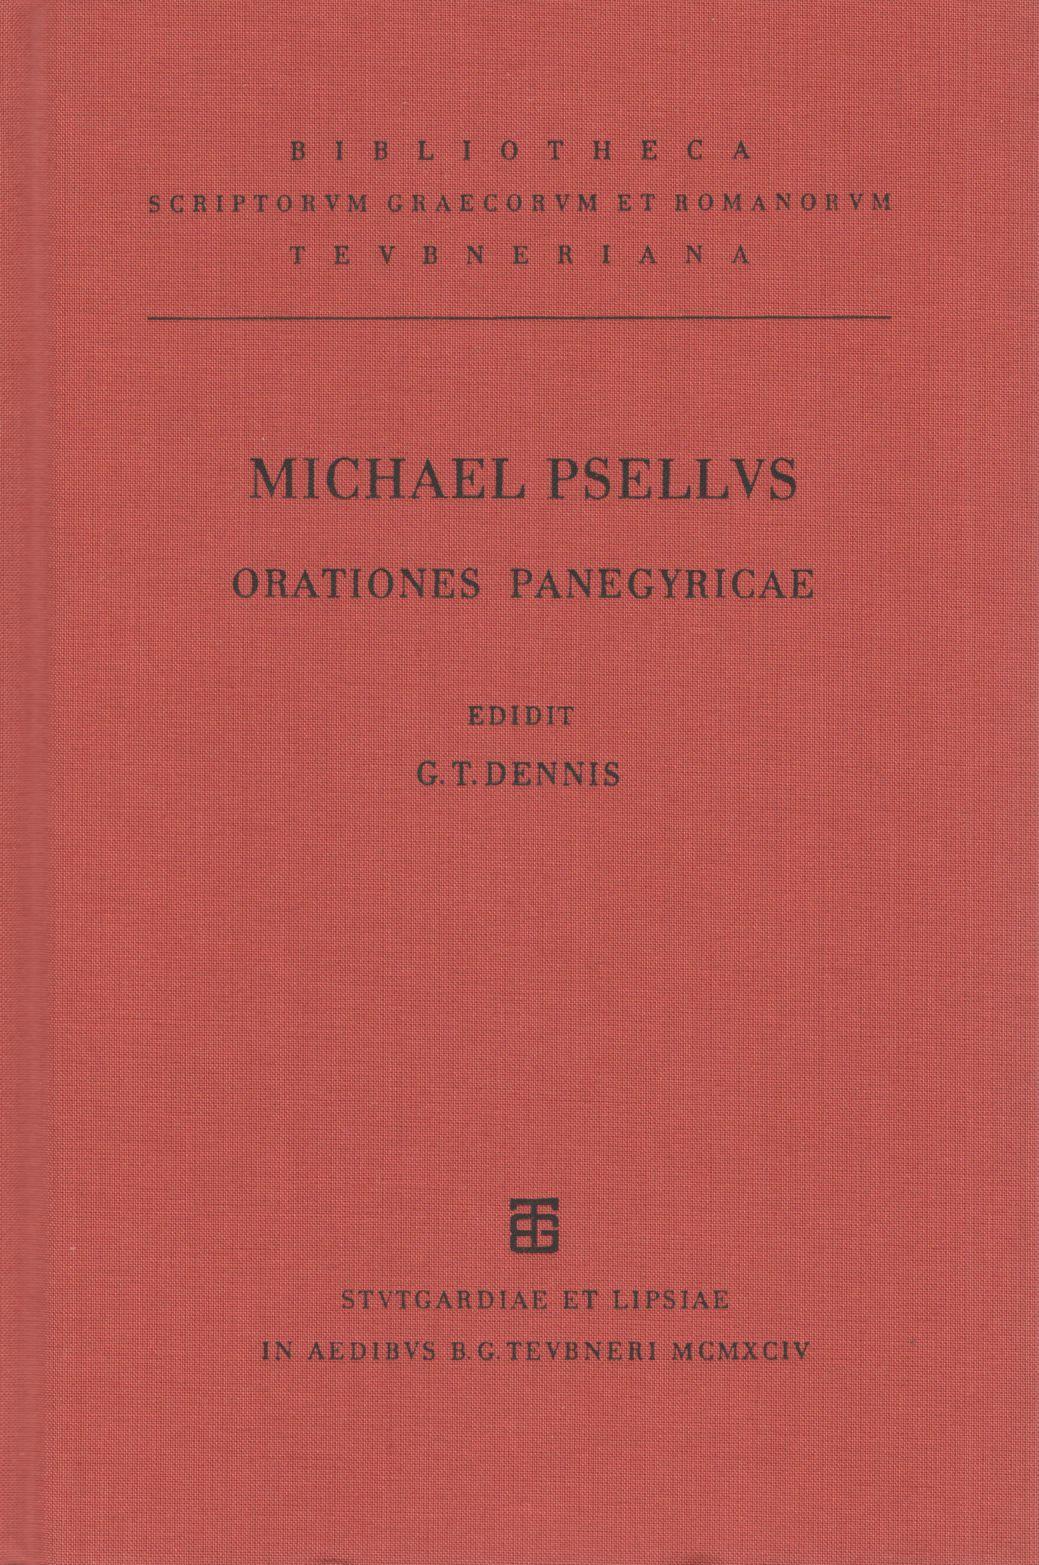 MICHAELIS PSELLI ORATIONES PANEGYRICAE